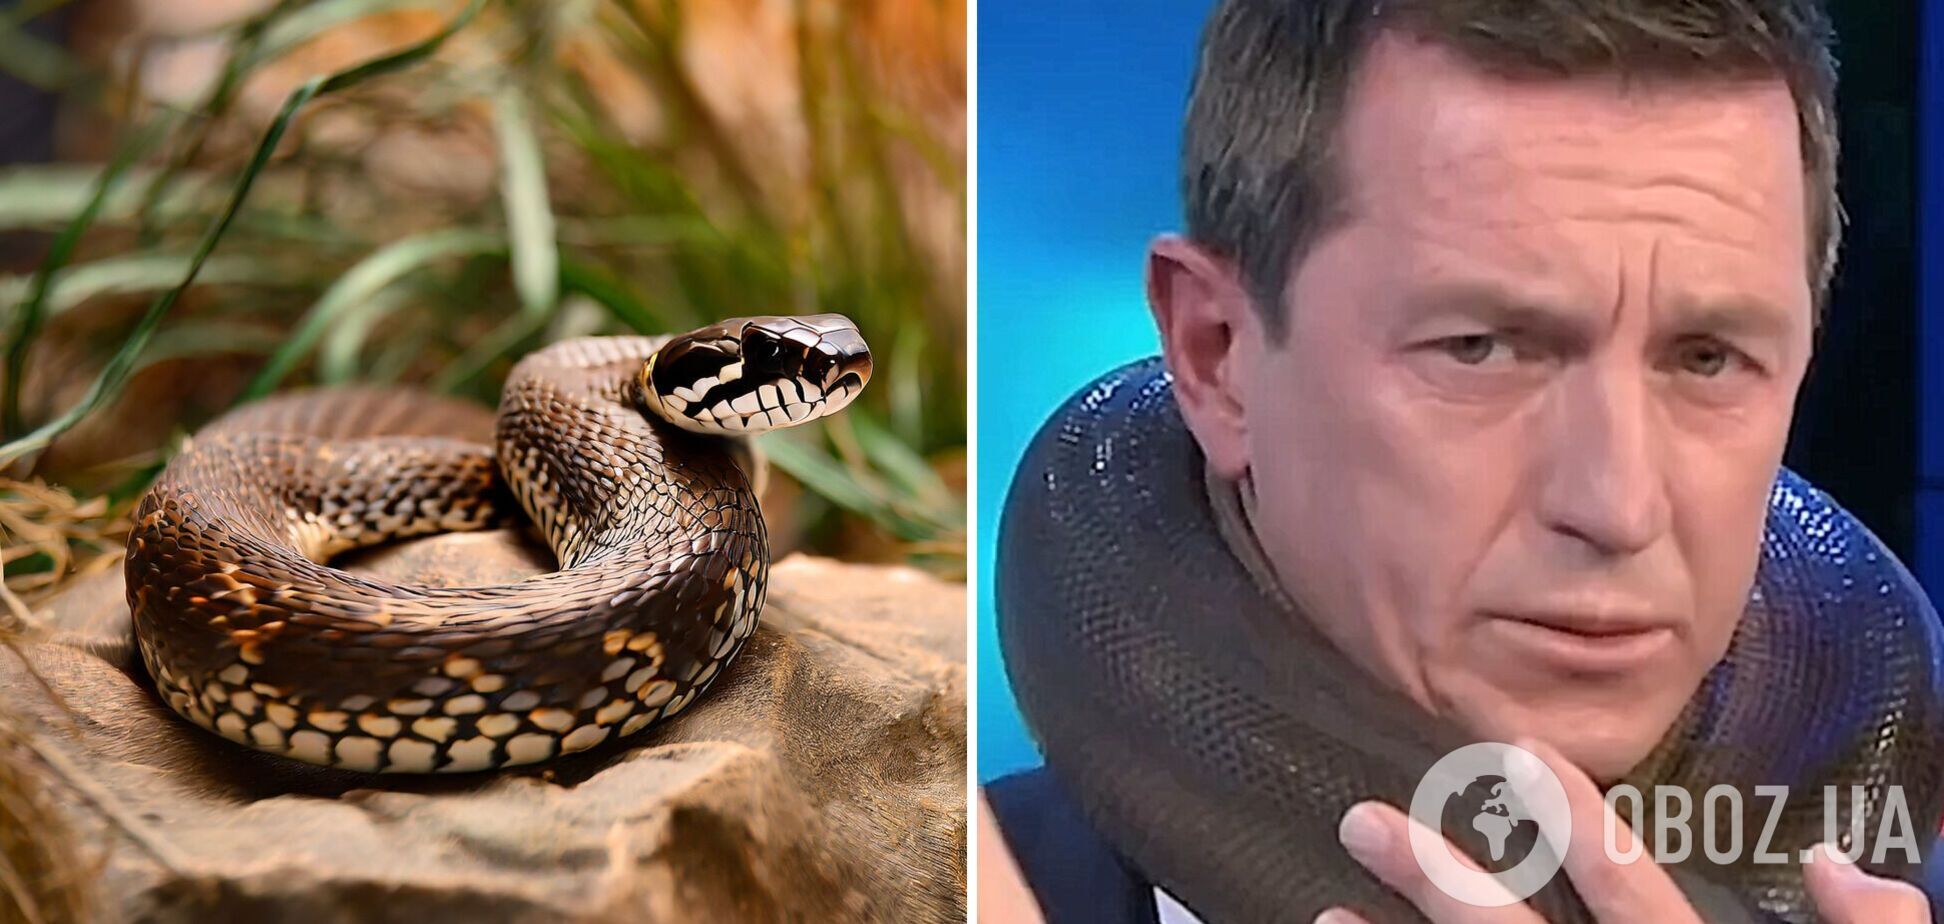 'Я не могу двигаться'. Змея чуть не задушила телезвезду Австралии в прямом эфире: ужасный момент попал на видео